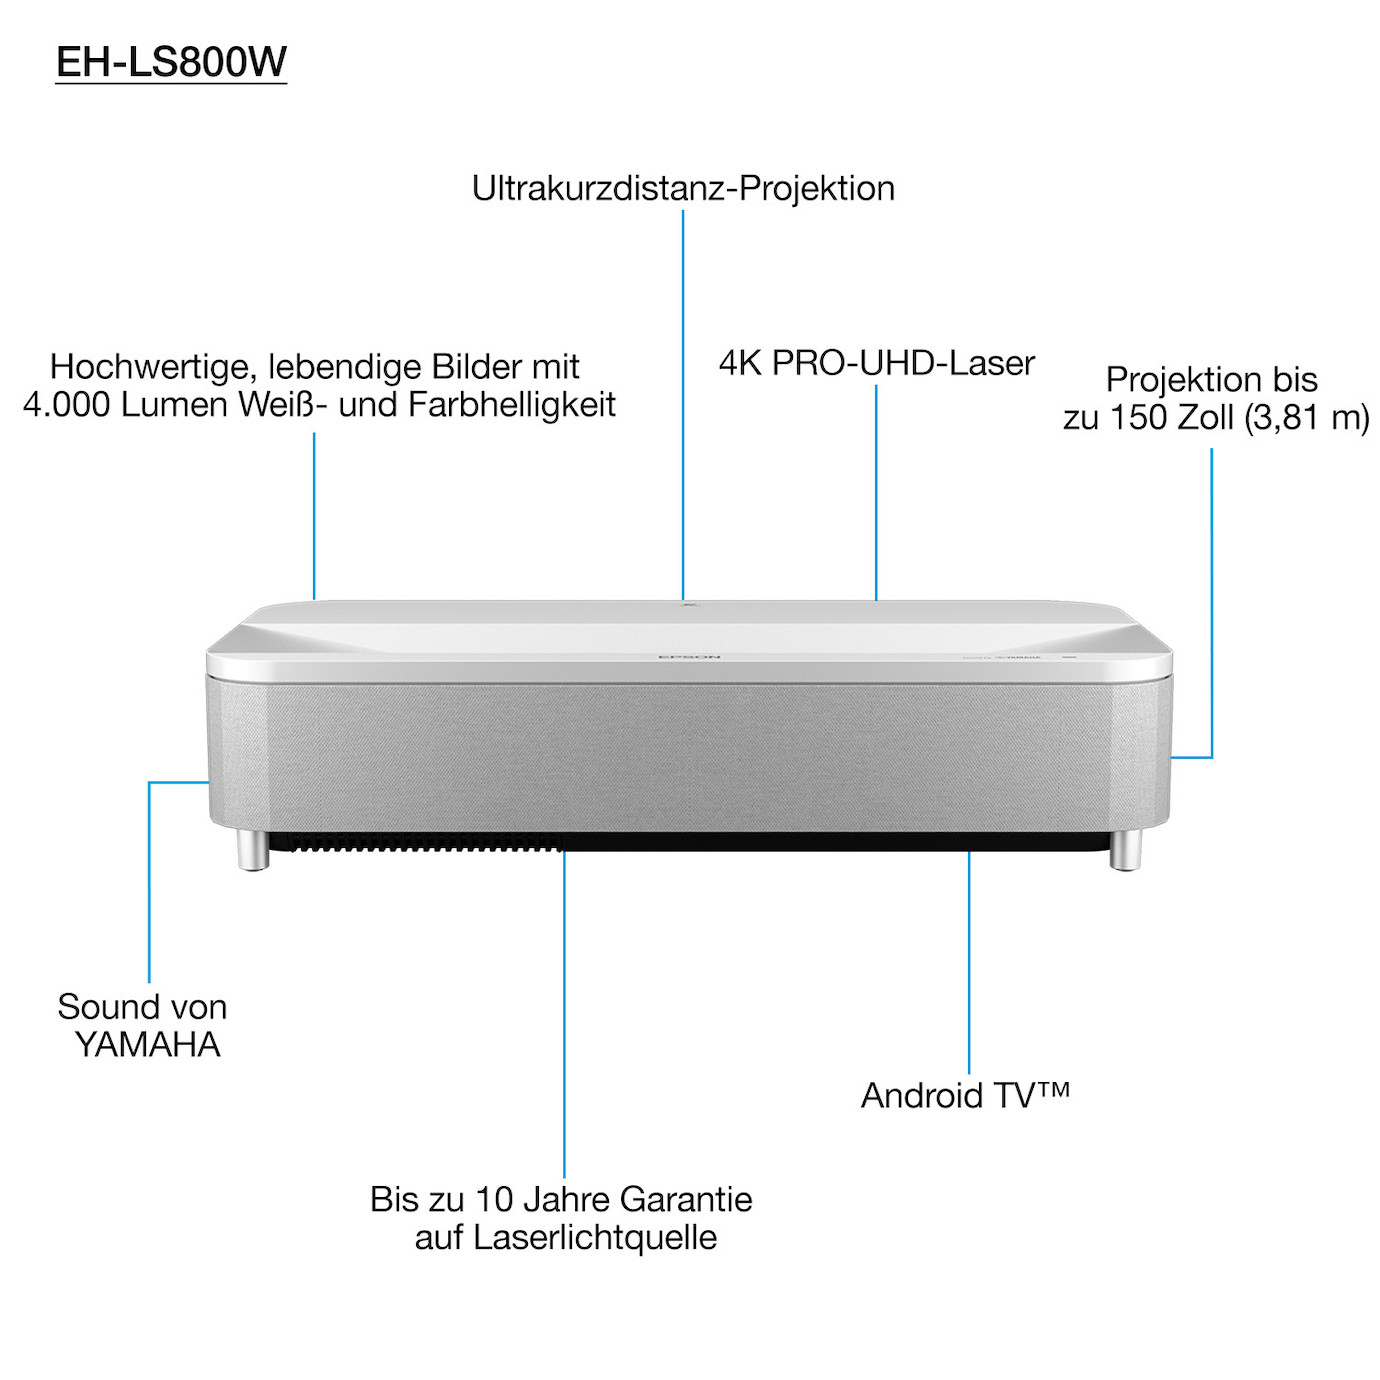 Vorschau: Epson EH-LS800W - Beamer, UST, Laser, UHD, Android TV, 4000 Ansi